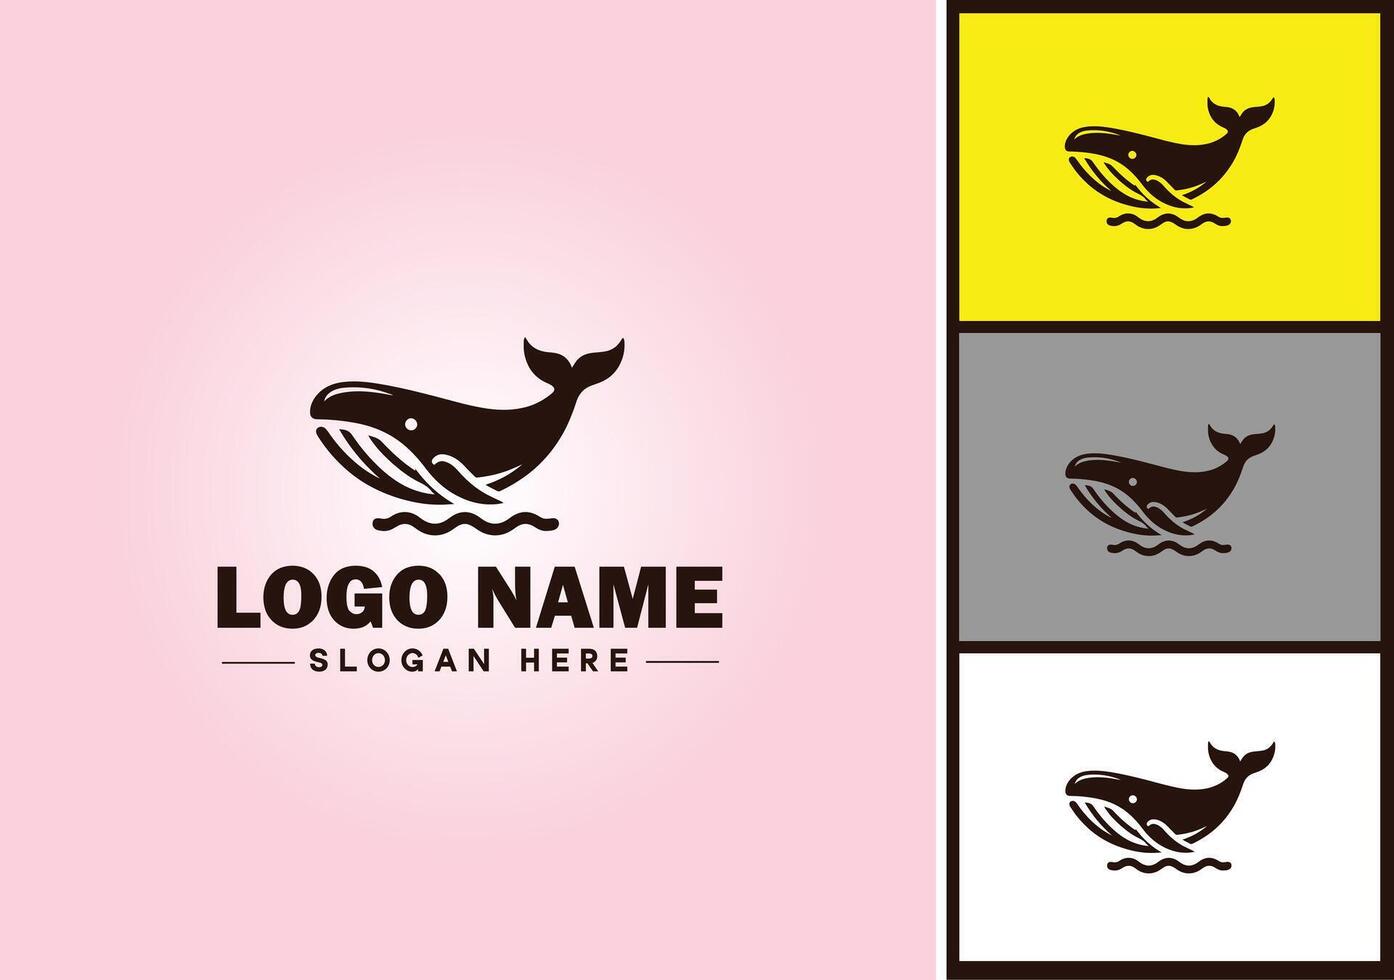 baleine icône logo vecteur art graphique pour affaires marque icône baleine poisson océan logo modèle